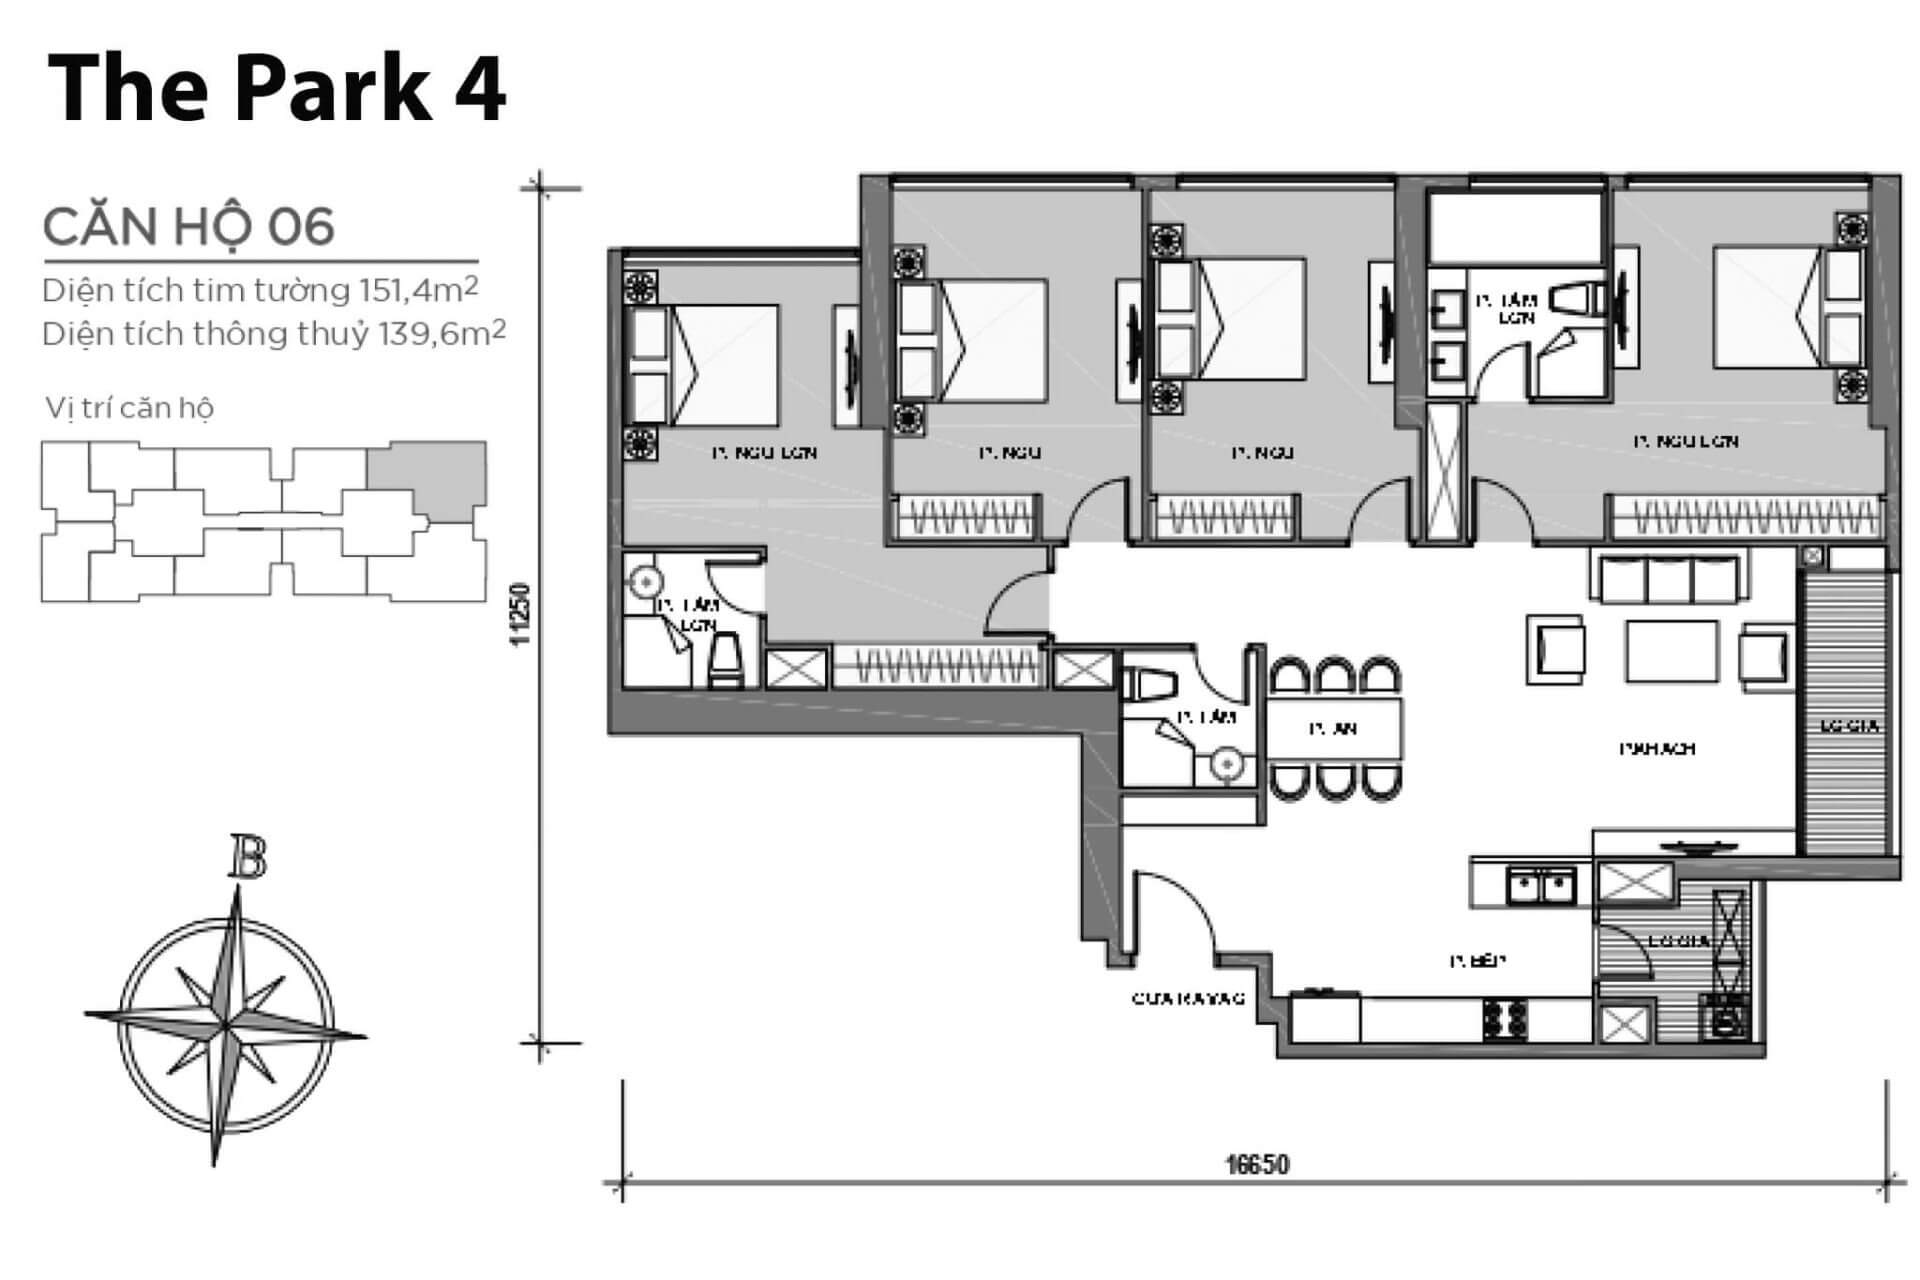 mặt bằng layout căn hộ số 06 Park 4 Vinhomes Central Park